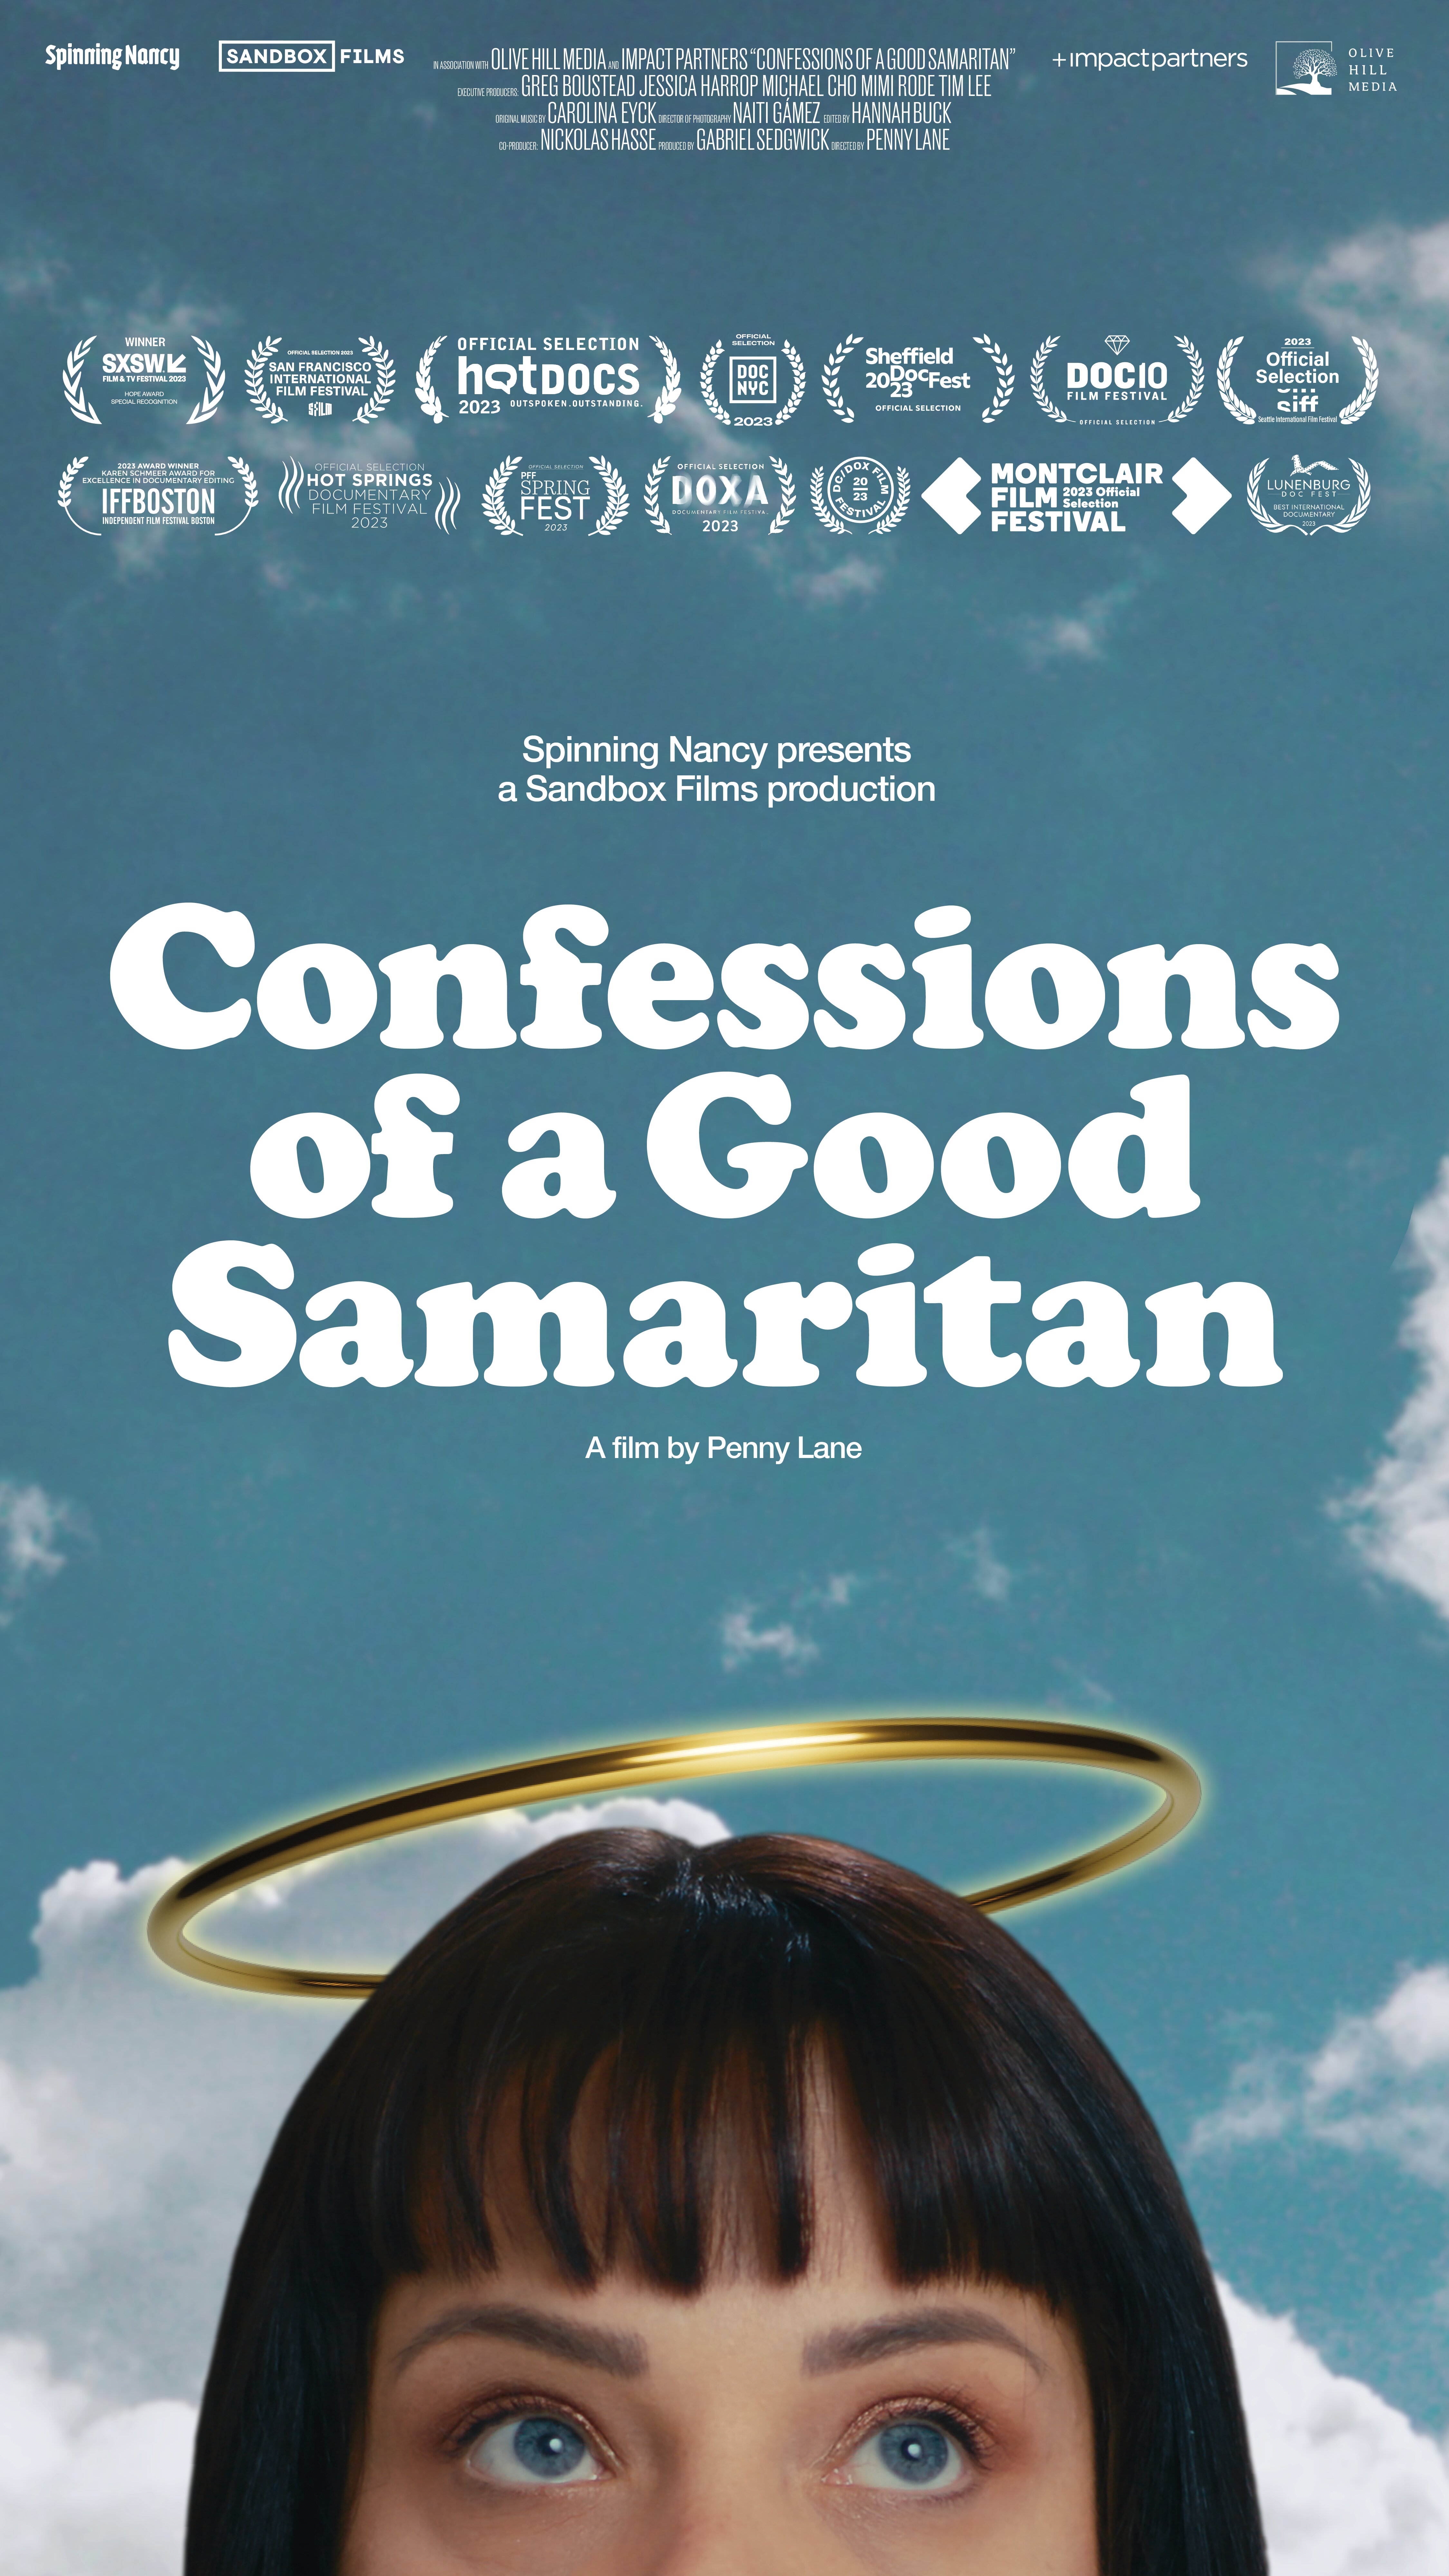 Confessions of a Good Samaritan